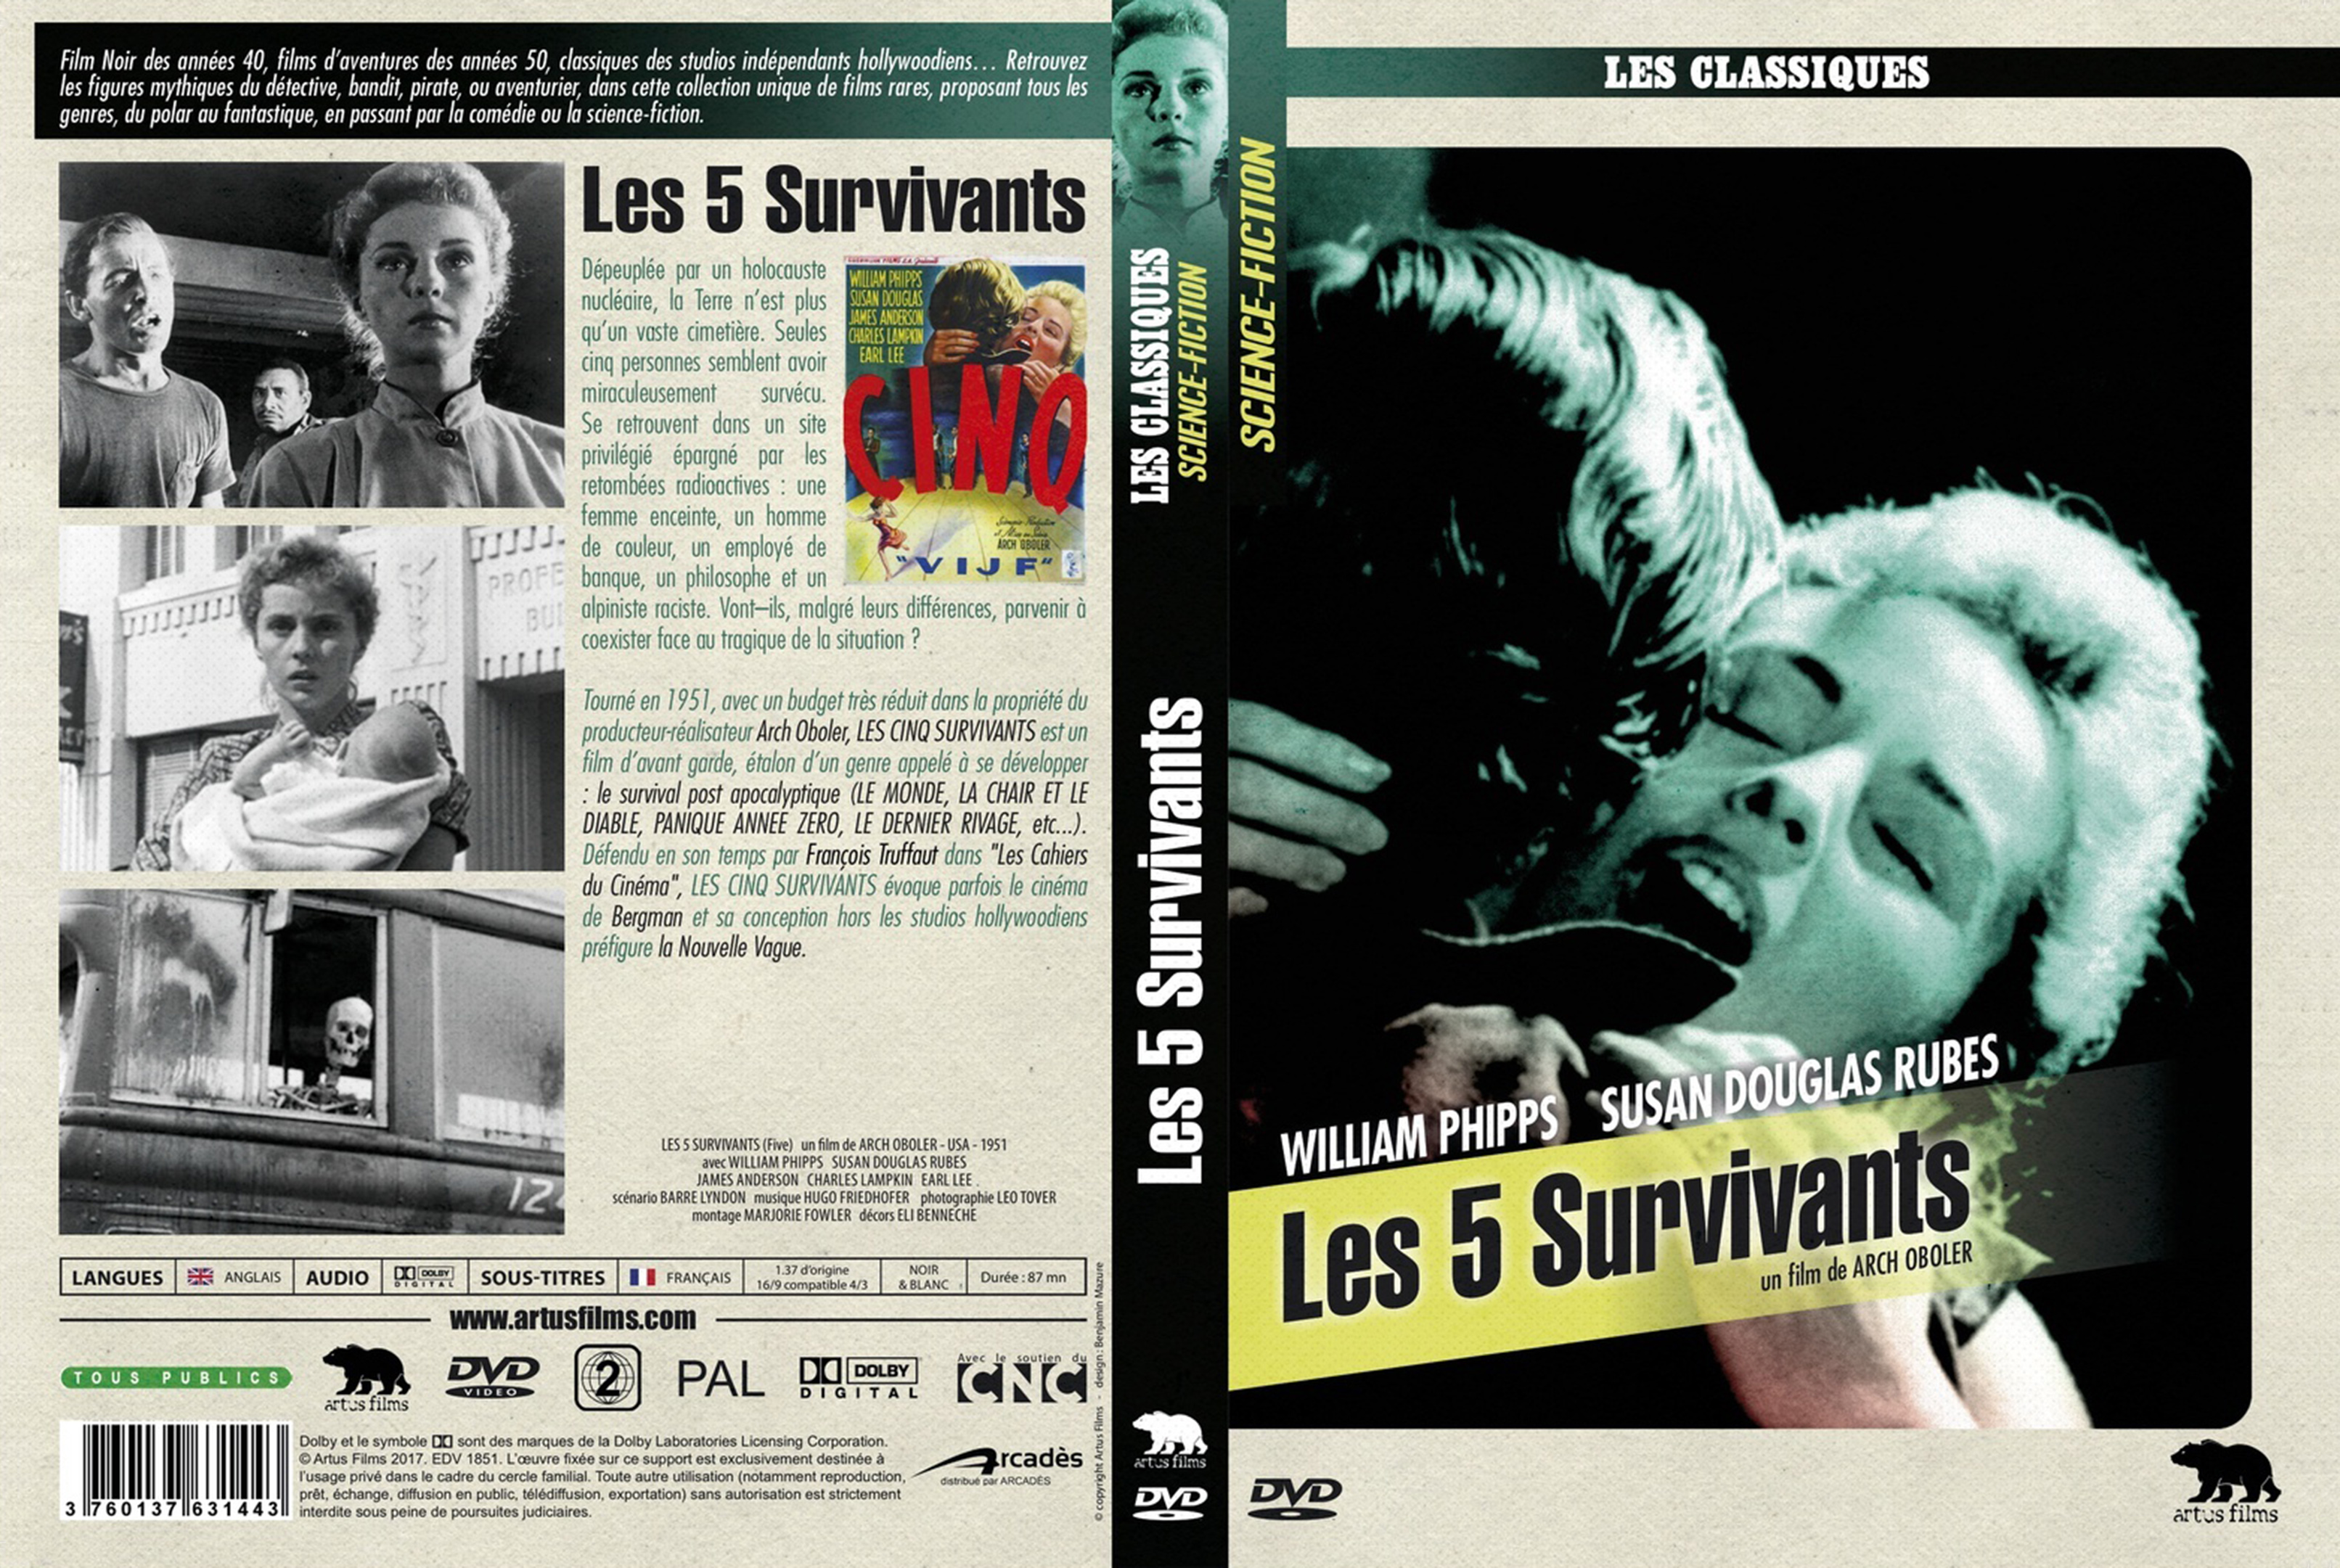 Jaquette DVD Les 5 survivants